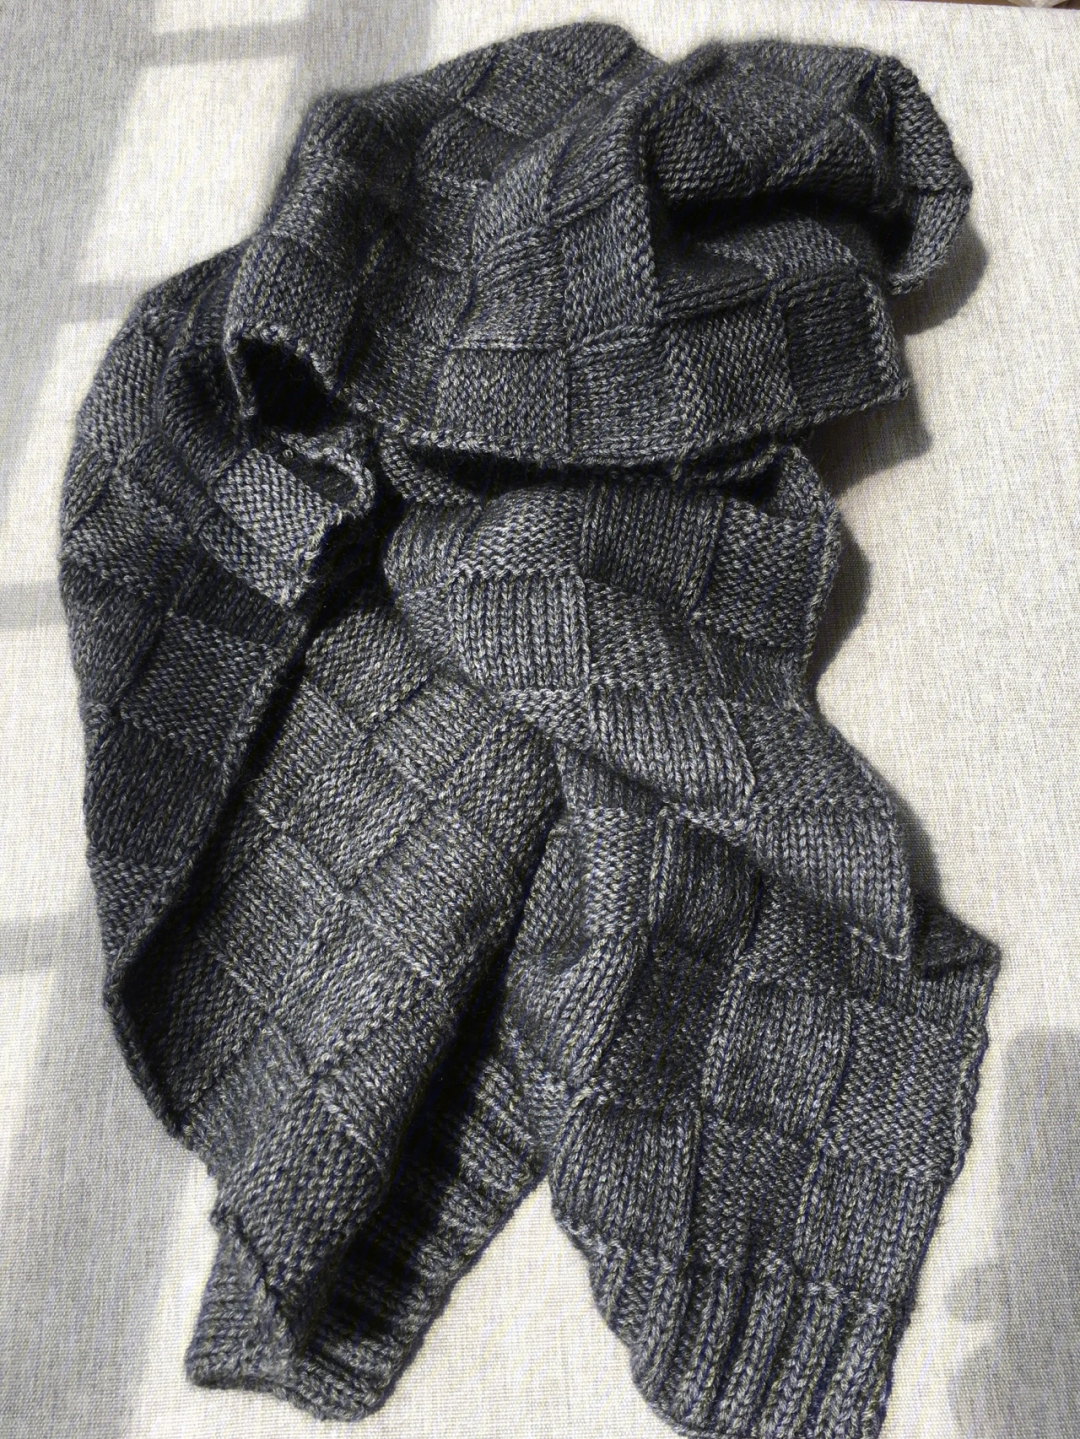 围巾织法:棋盘格围巾围巾材质:羊绒围巾颜色:深灰色